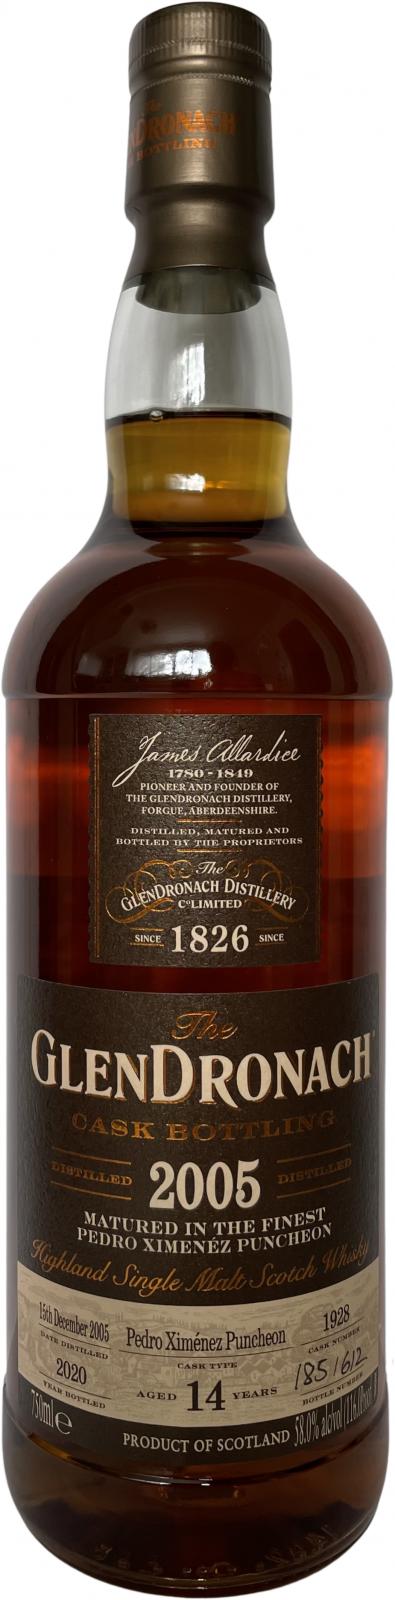 Glendronach 2005 Cask Bottling - Batch 18 14 Year Old (2020) Release (Cask #1928) Scotch Whisky